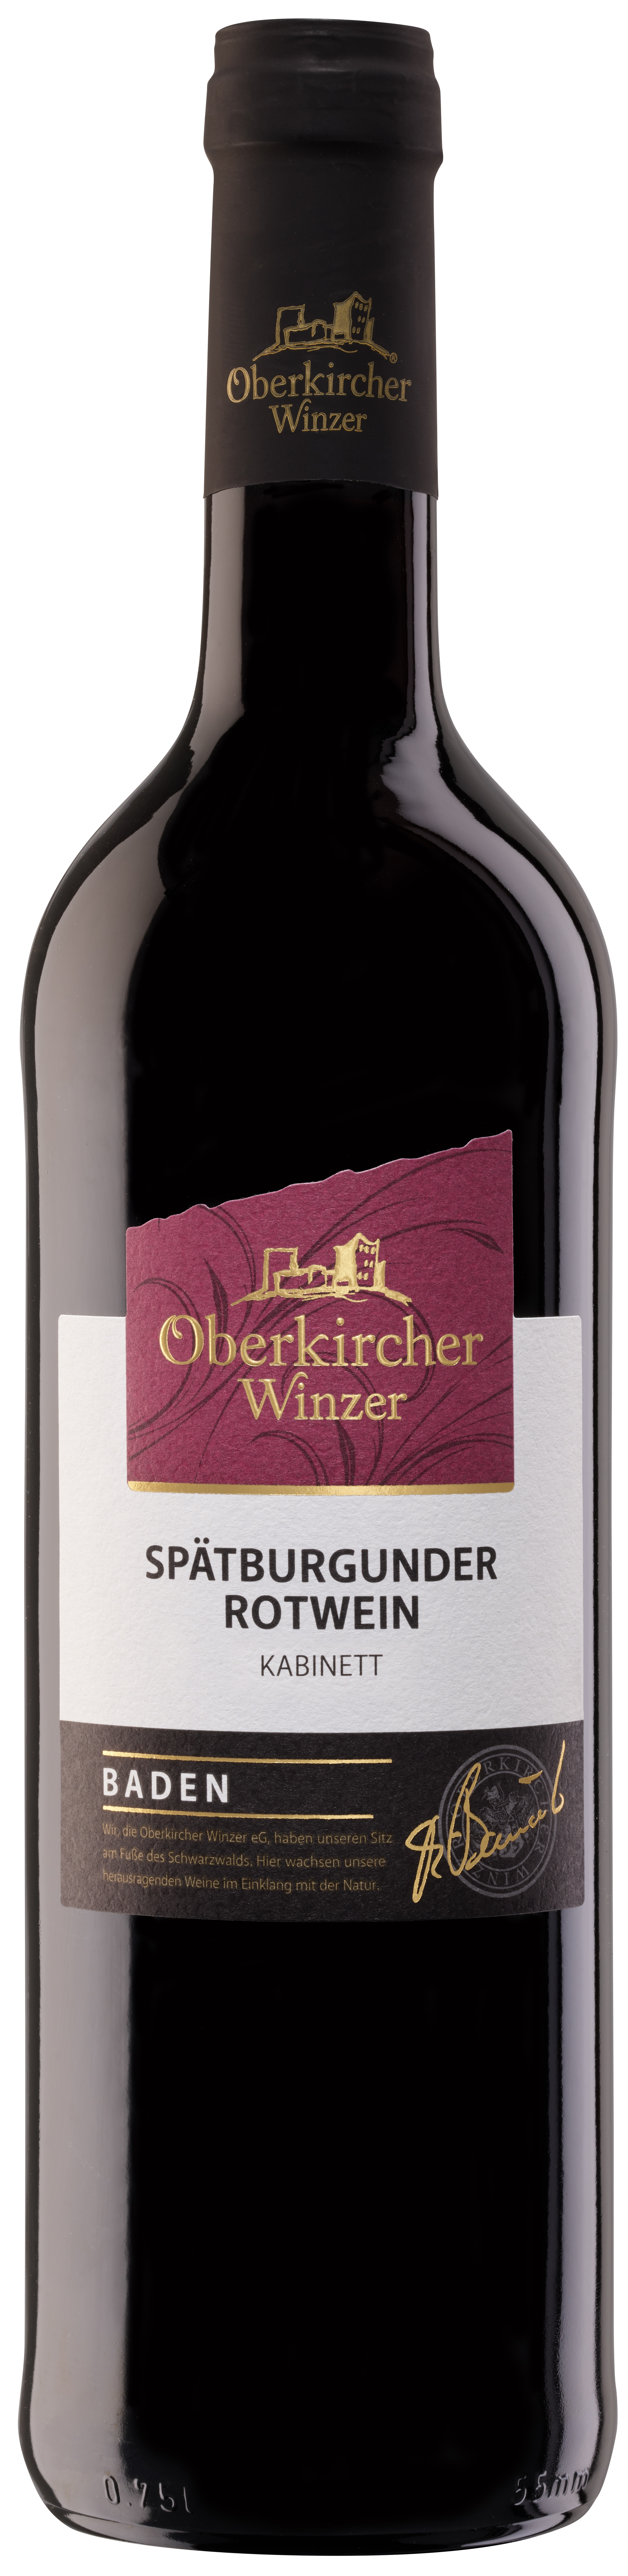 Collection Oberkirch, Spätburgunder Rotwein Kabinett - Winzer OSR416-2020 Oberkircher 